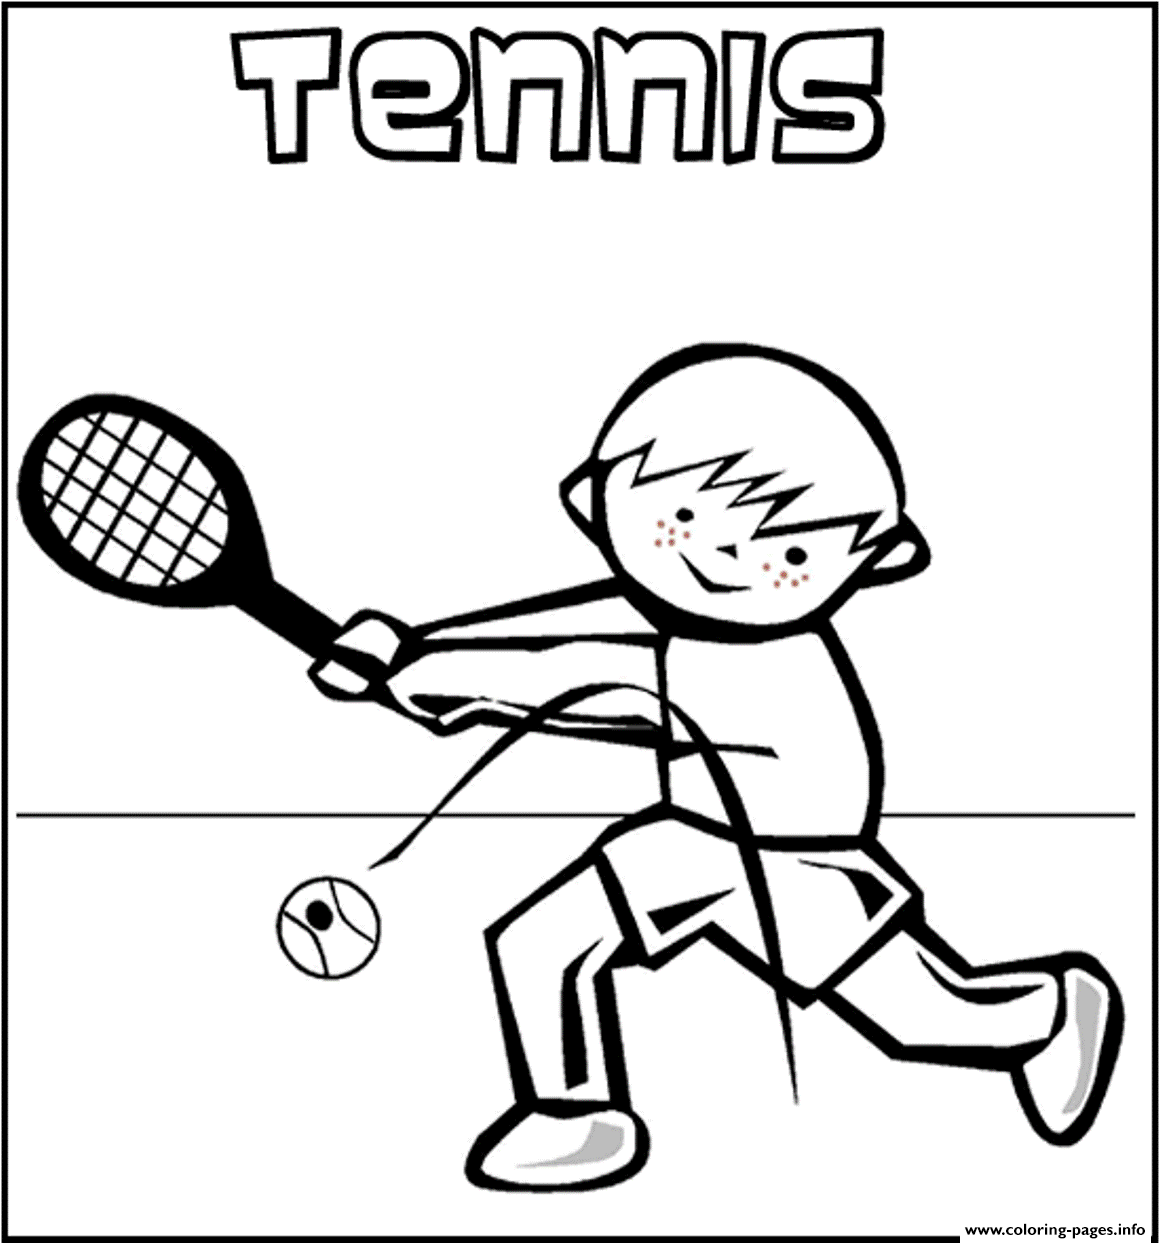 Большой теннис. Теннис. Раскраски на тему спорт, раскраски теннис.  Теннис. Большой теннис. Раскраски для детей на тему теннис, большой теннис. Раскраски для детей на тему спорт. Скачать раскраски теннис.Скачать раскраски спорт. 